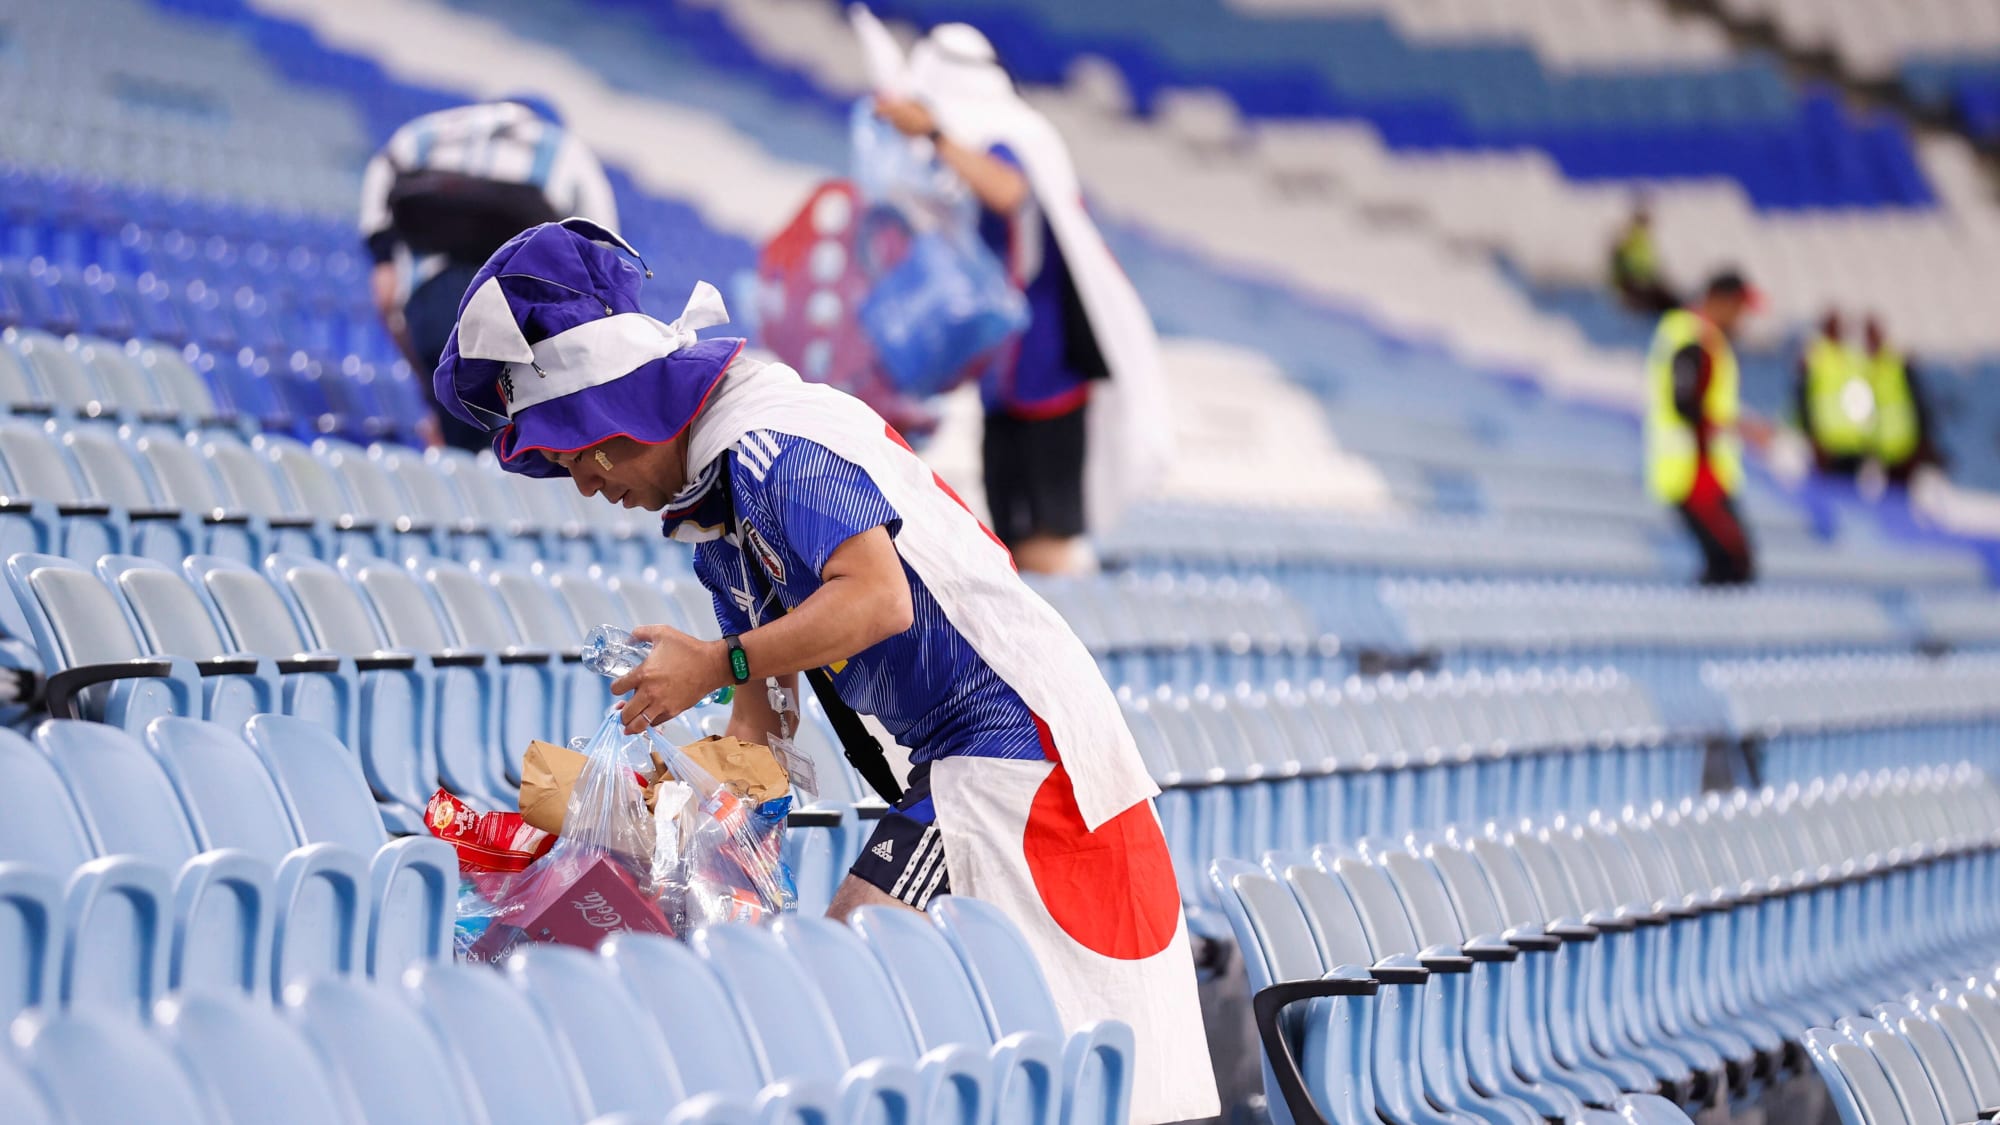 Die japanischen Fans räumten ihren Block bei der WM nach dem Spiel fein säuberlich auf.